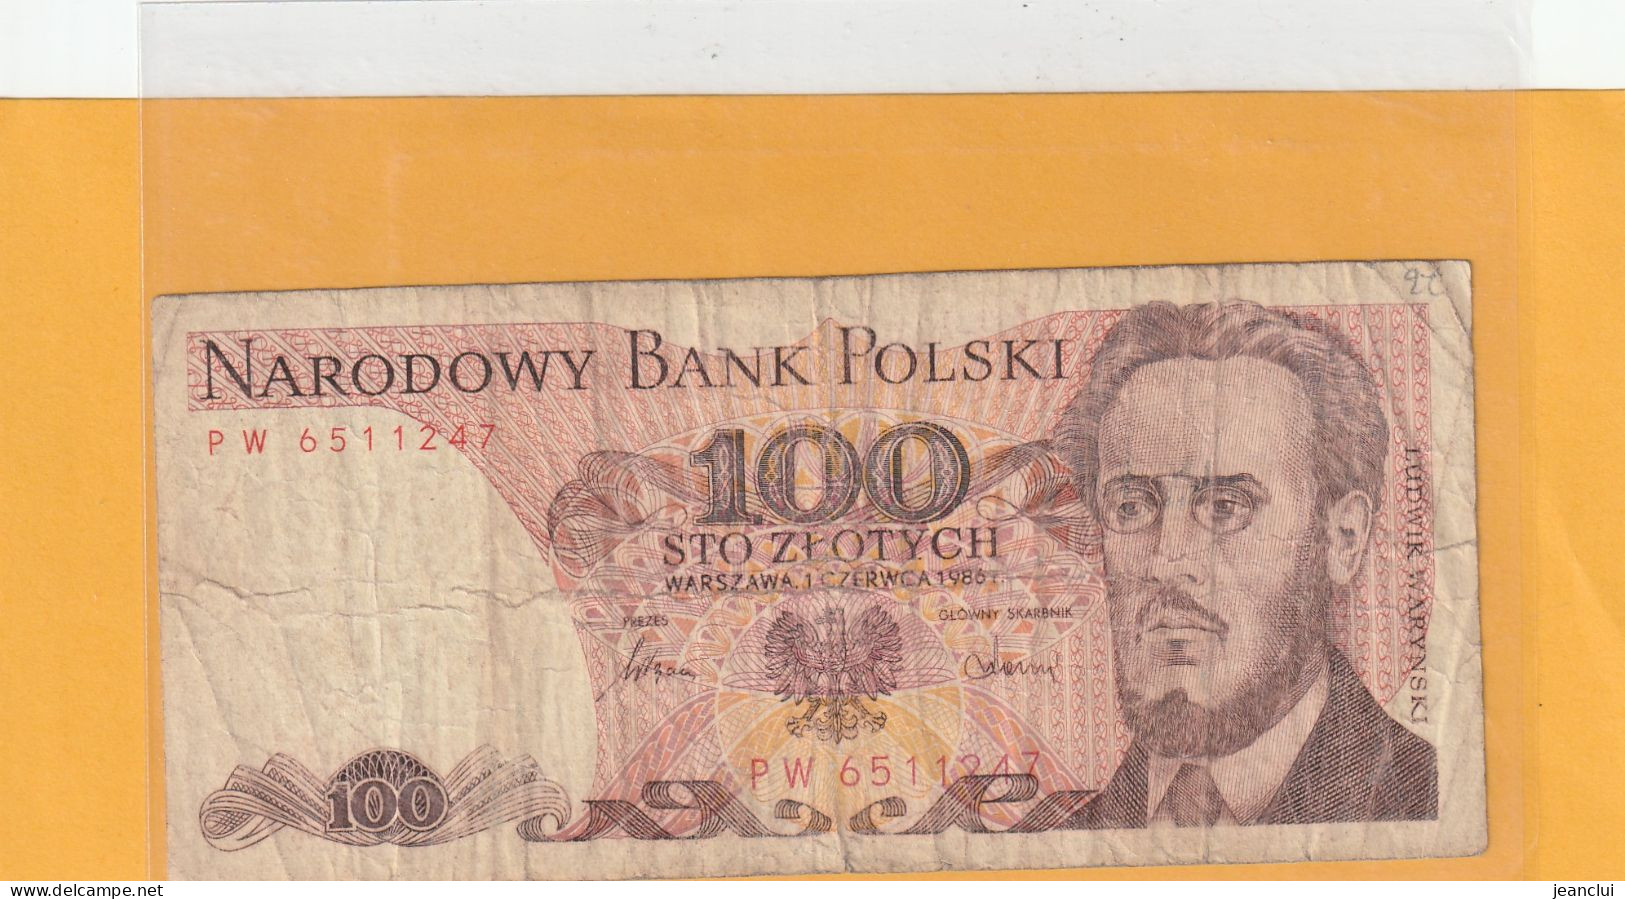 NARODOWY BANK POLSKI . 100 ZLOTYCH .  1-6-1986 .  N° PW 6511247 .  2 SCANNES - Pologne